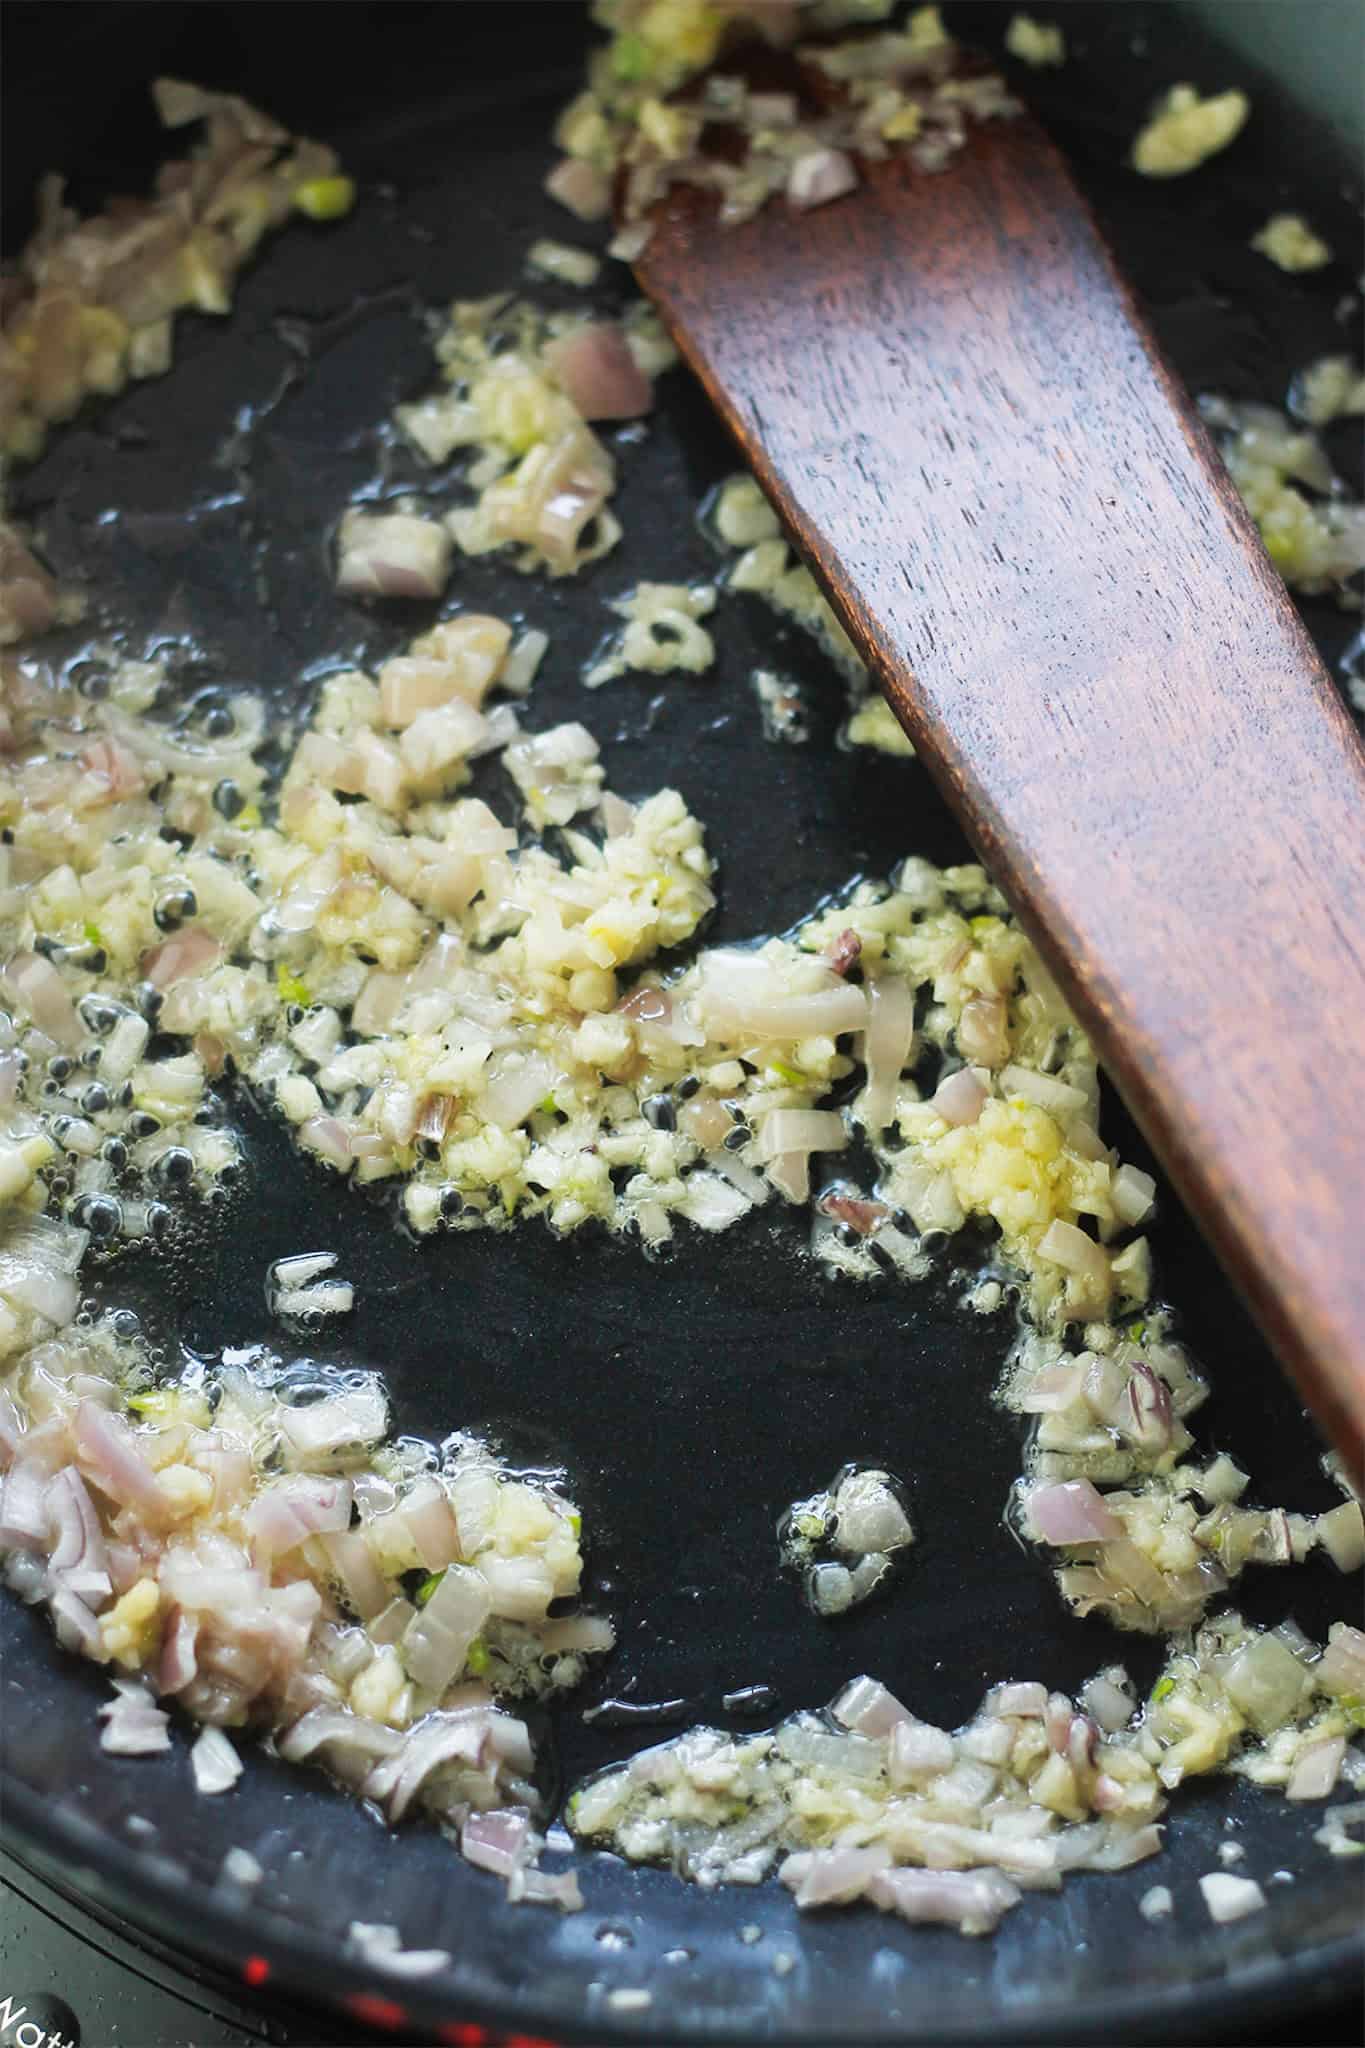 Shallots and garlic sauteing in pan.